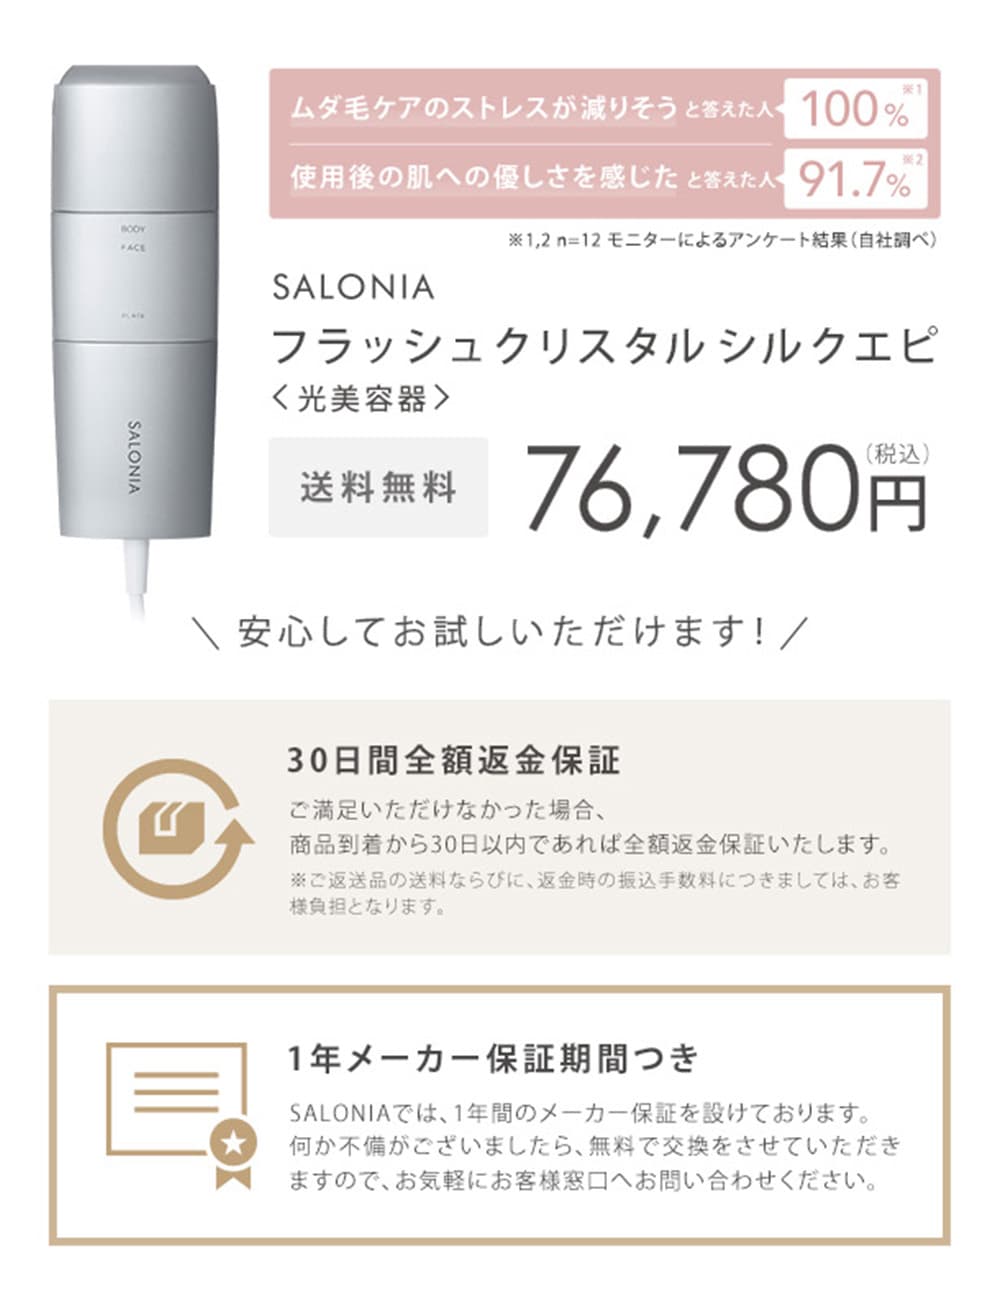 【新品】SALONIA サロニア フラッシュ クリスタル シルクエピ 光美容器